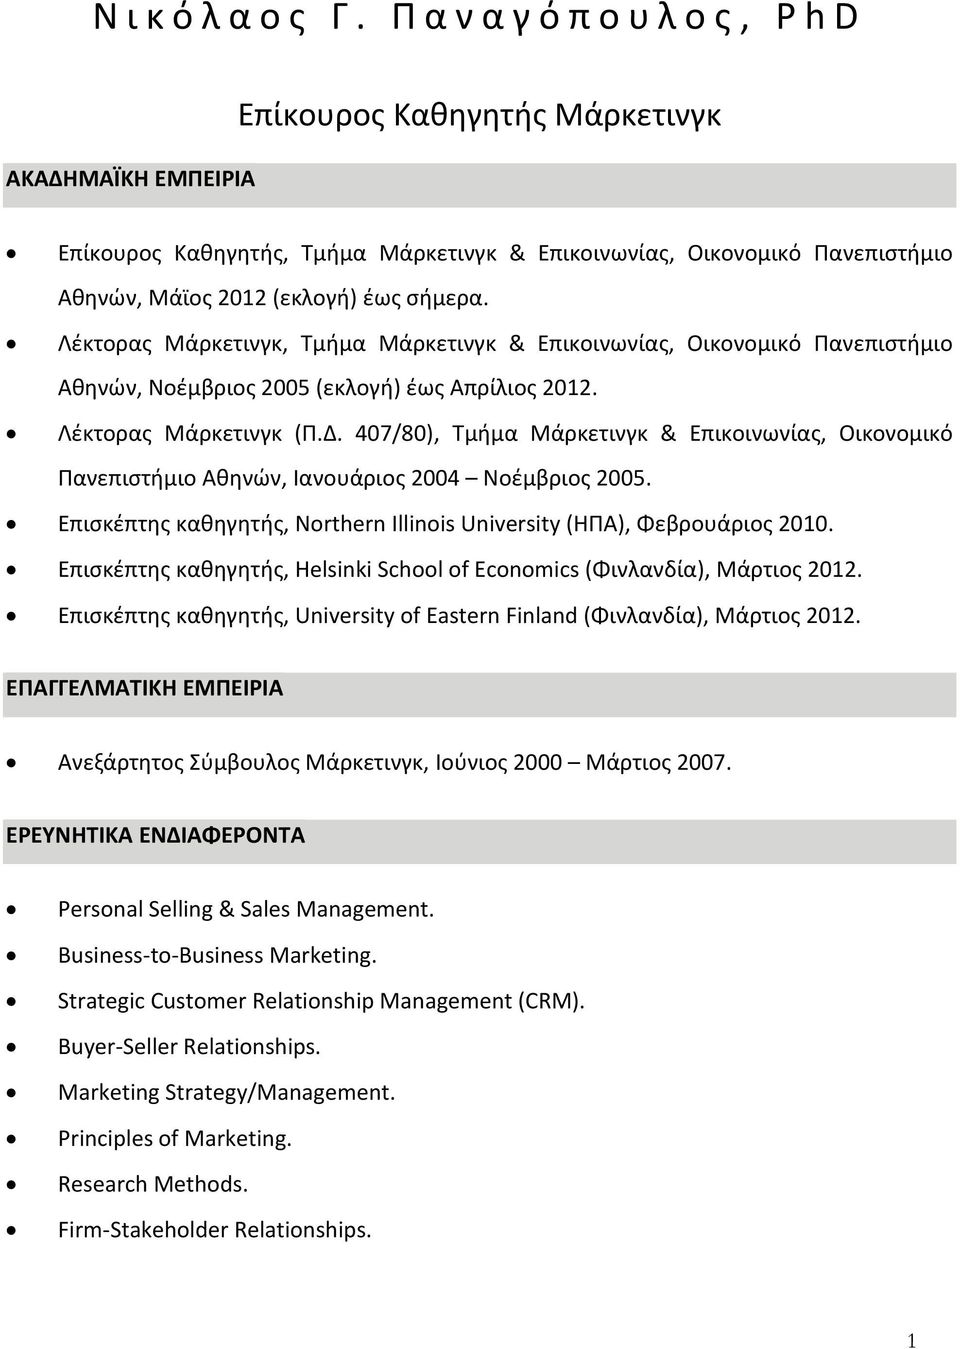 Λέκτορας Μάρκετινγκ, Τμήμα Μάρκετινγκ & Επικοινωνίας, Οικονομικό Πανεπιστήμιο Αθηνών, Νοέμβριος 2005 (εκλογή) έως Απρίλιος 2012. Λέκτορας Μάρκετινγκ (Π.Δ.